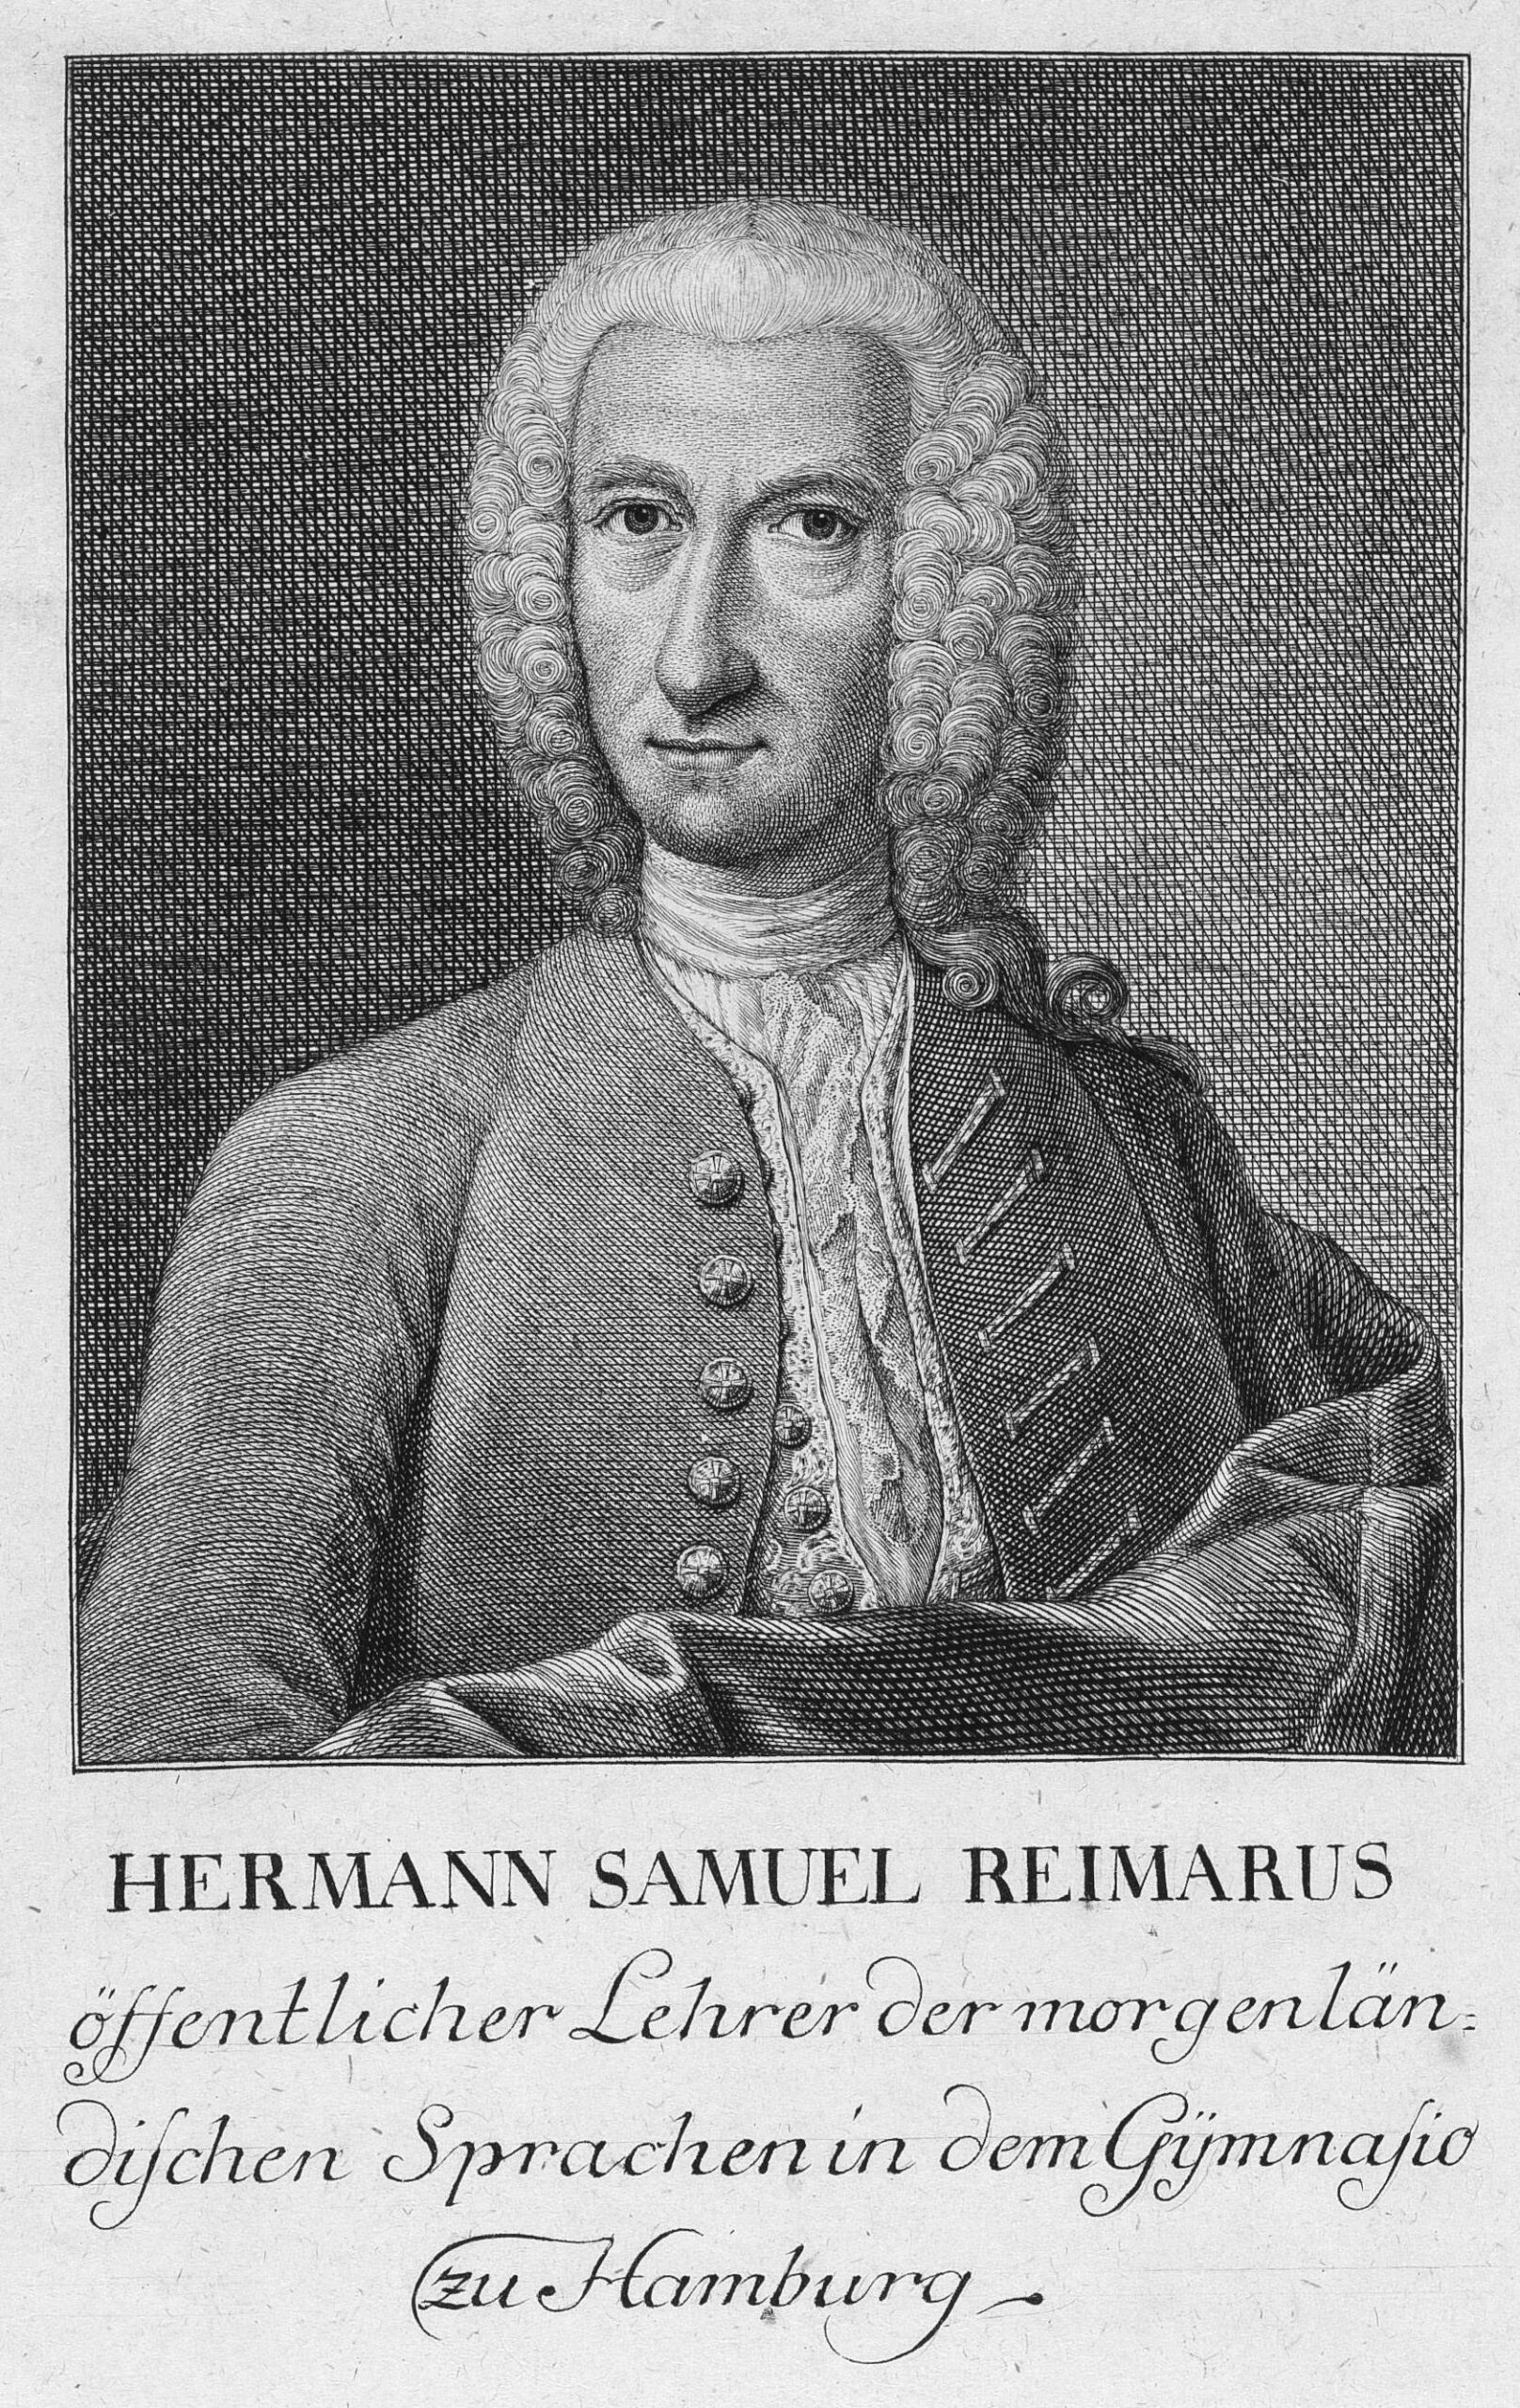 2022-11-07-hermann-samuel-reimarus.jpg